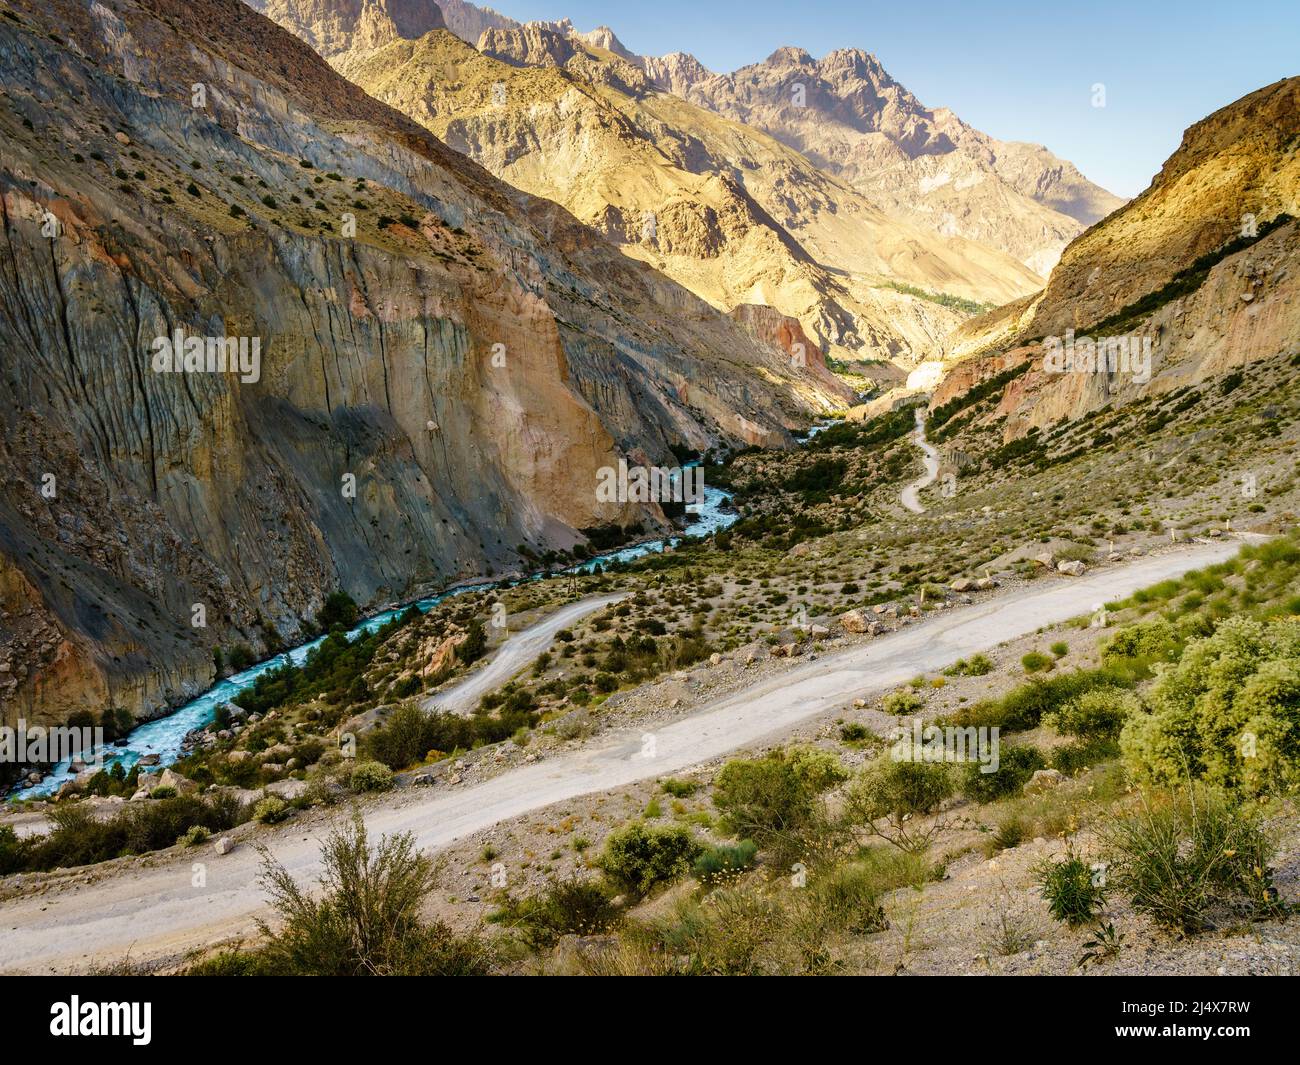 Malerische Bergstraße nach Iskanderkul - ein alpiner See in den Bergen Tadschikistans Stockfoto